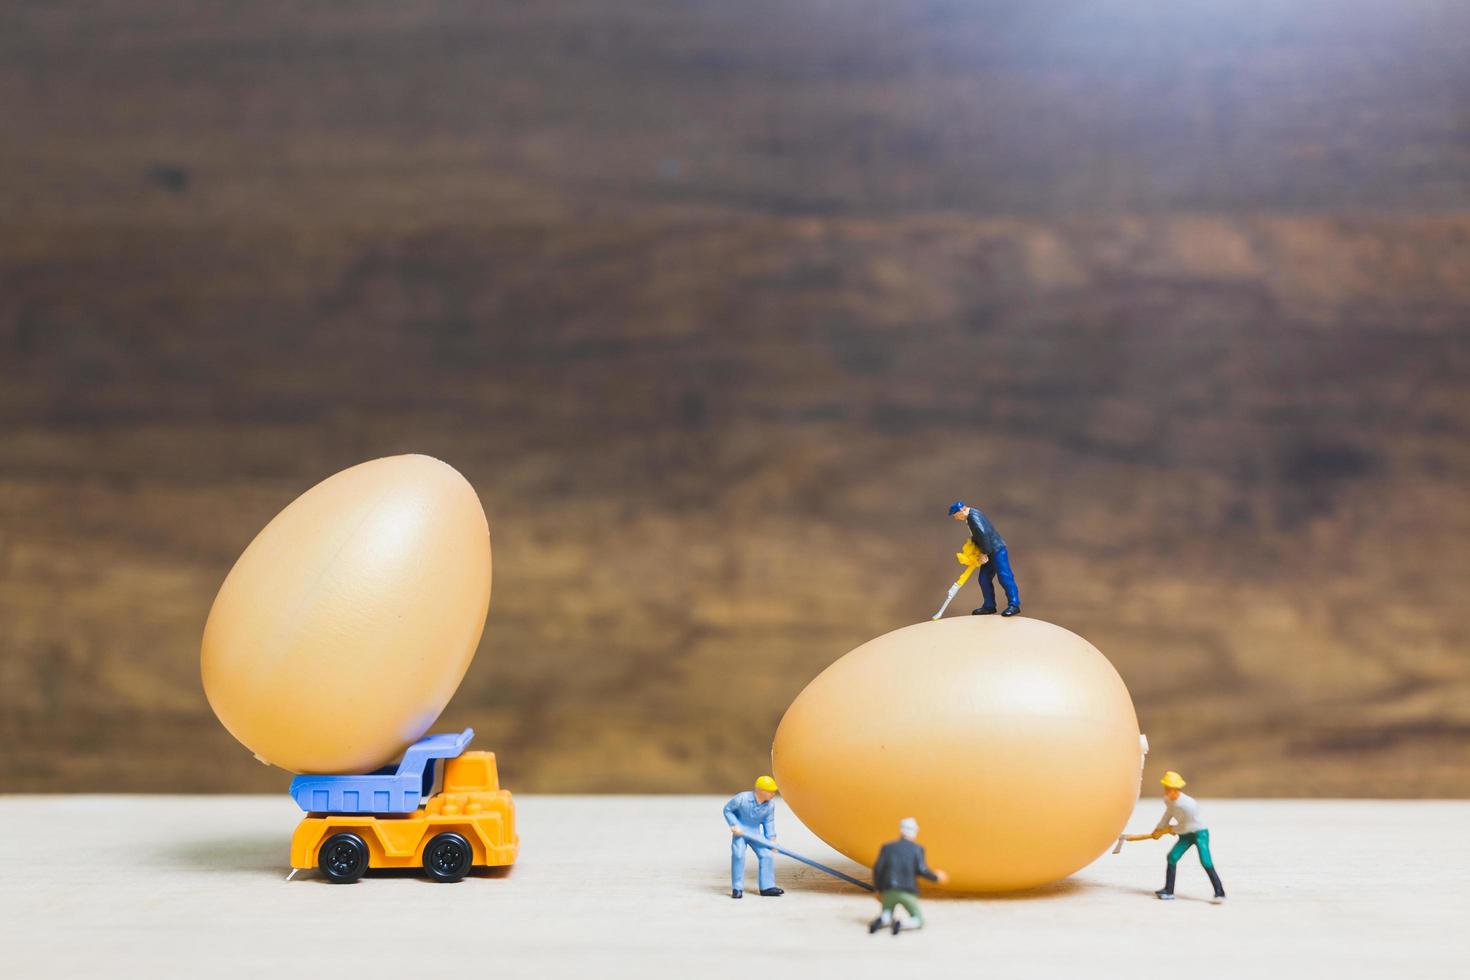 persone in miniatura che lavorano sulle uova di Pasqua per la Pasqua foto